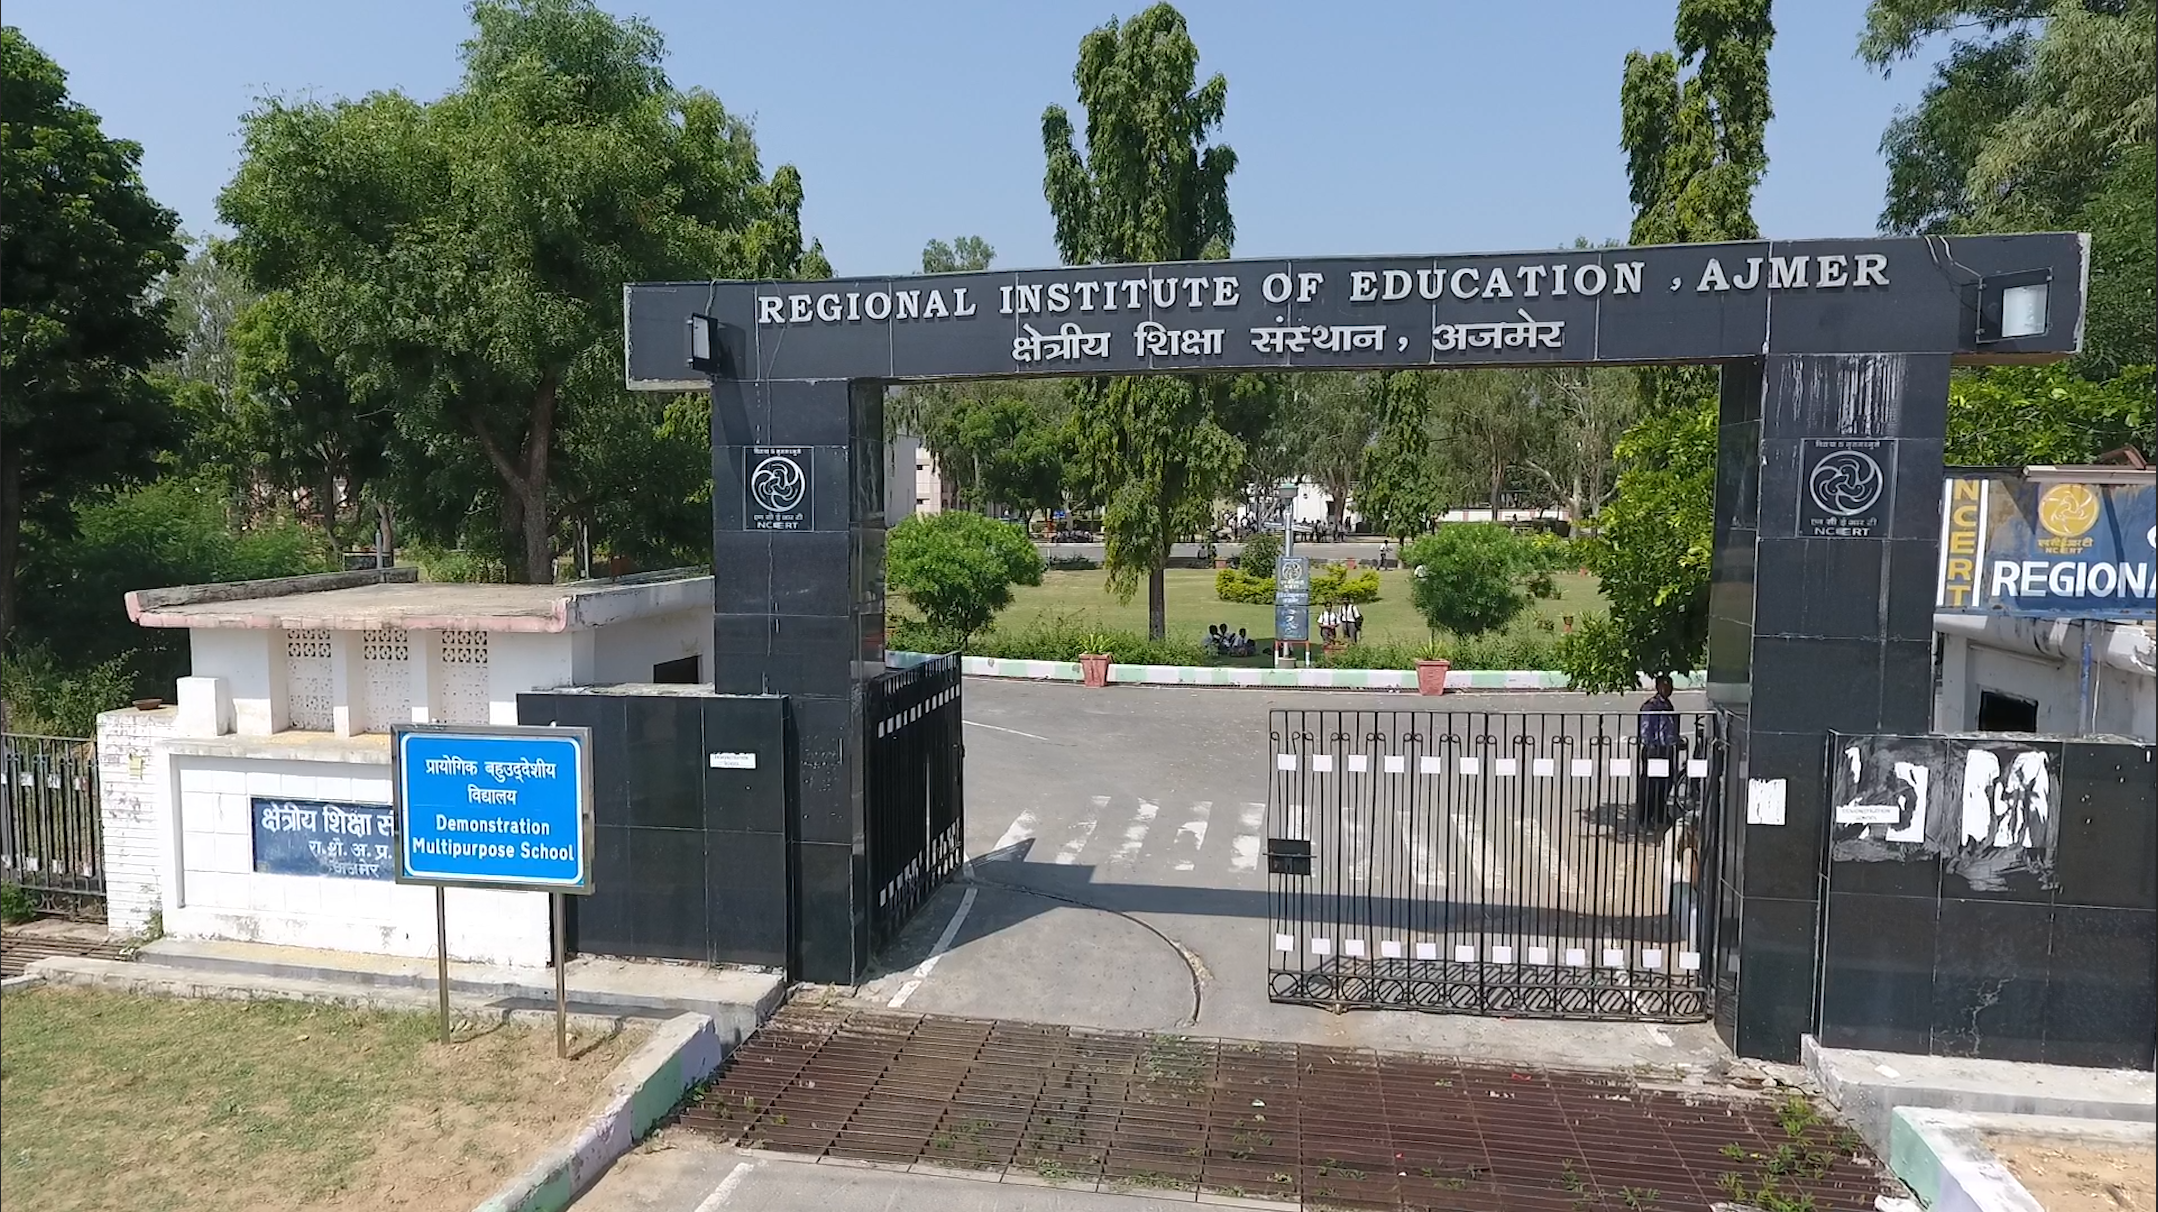 Regional Institute of Education, Ajmer Image